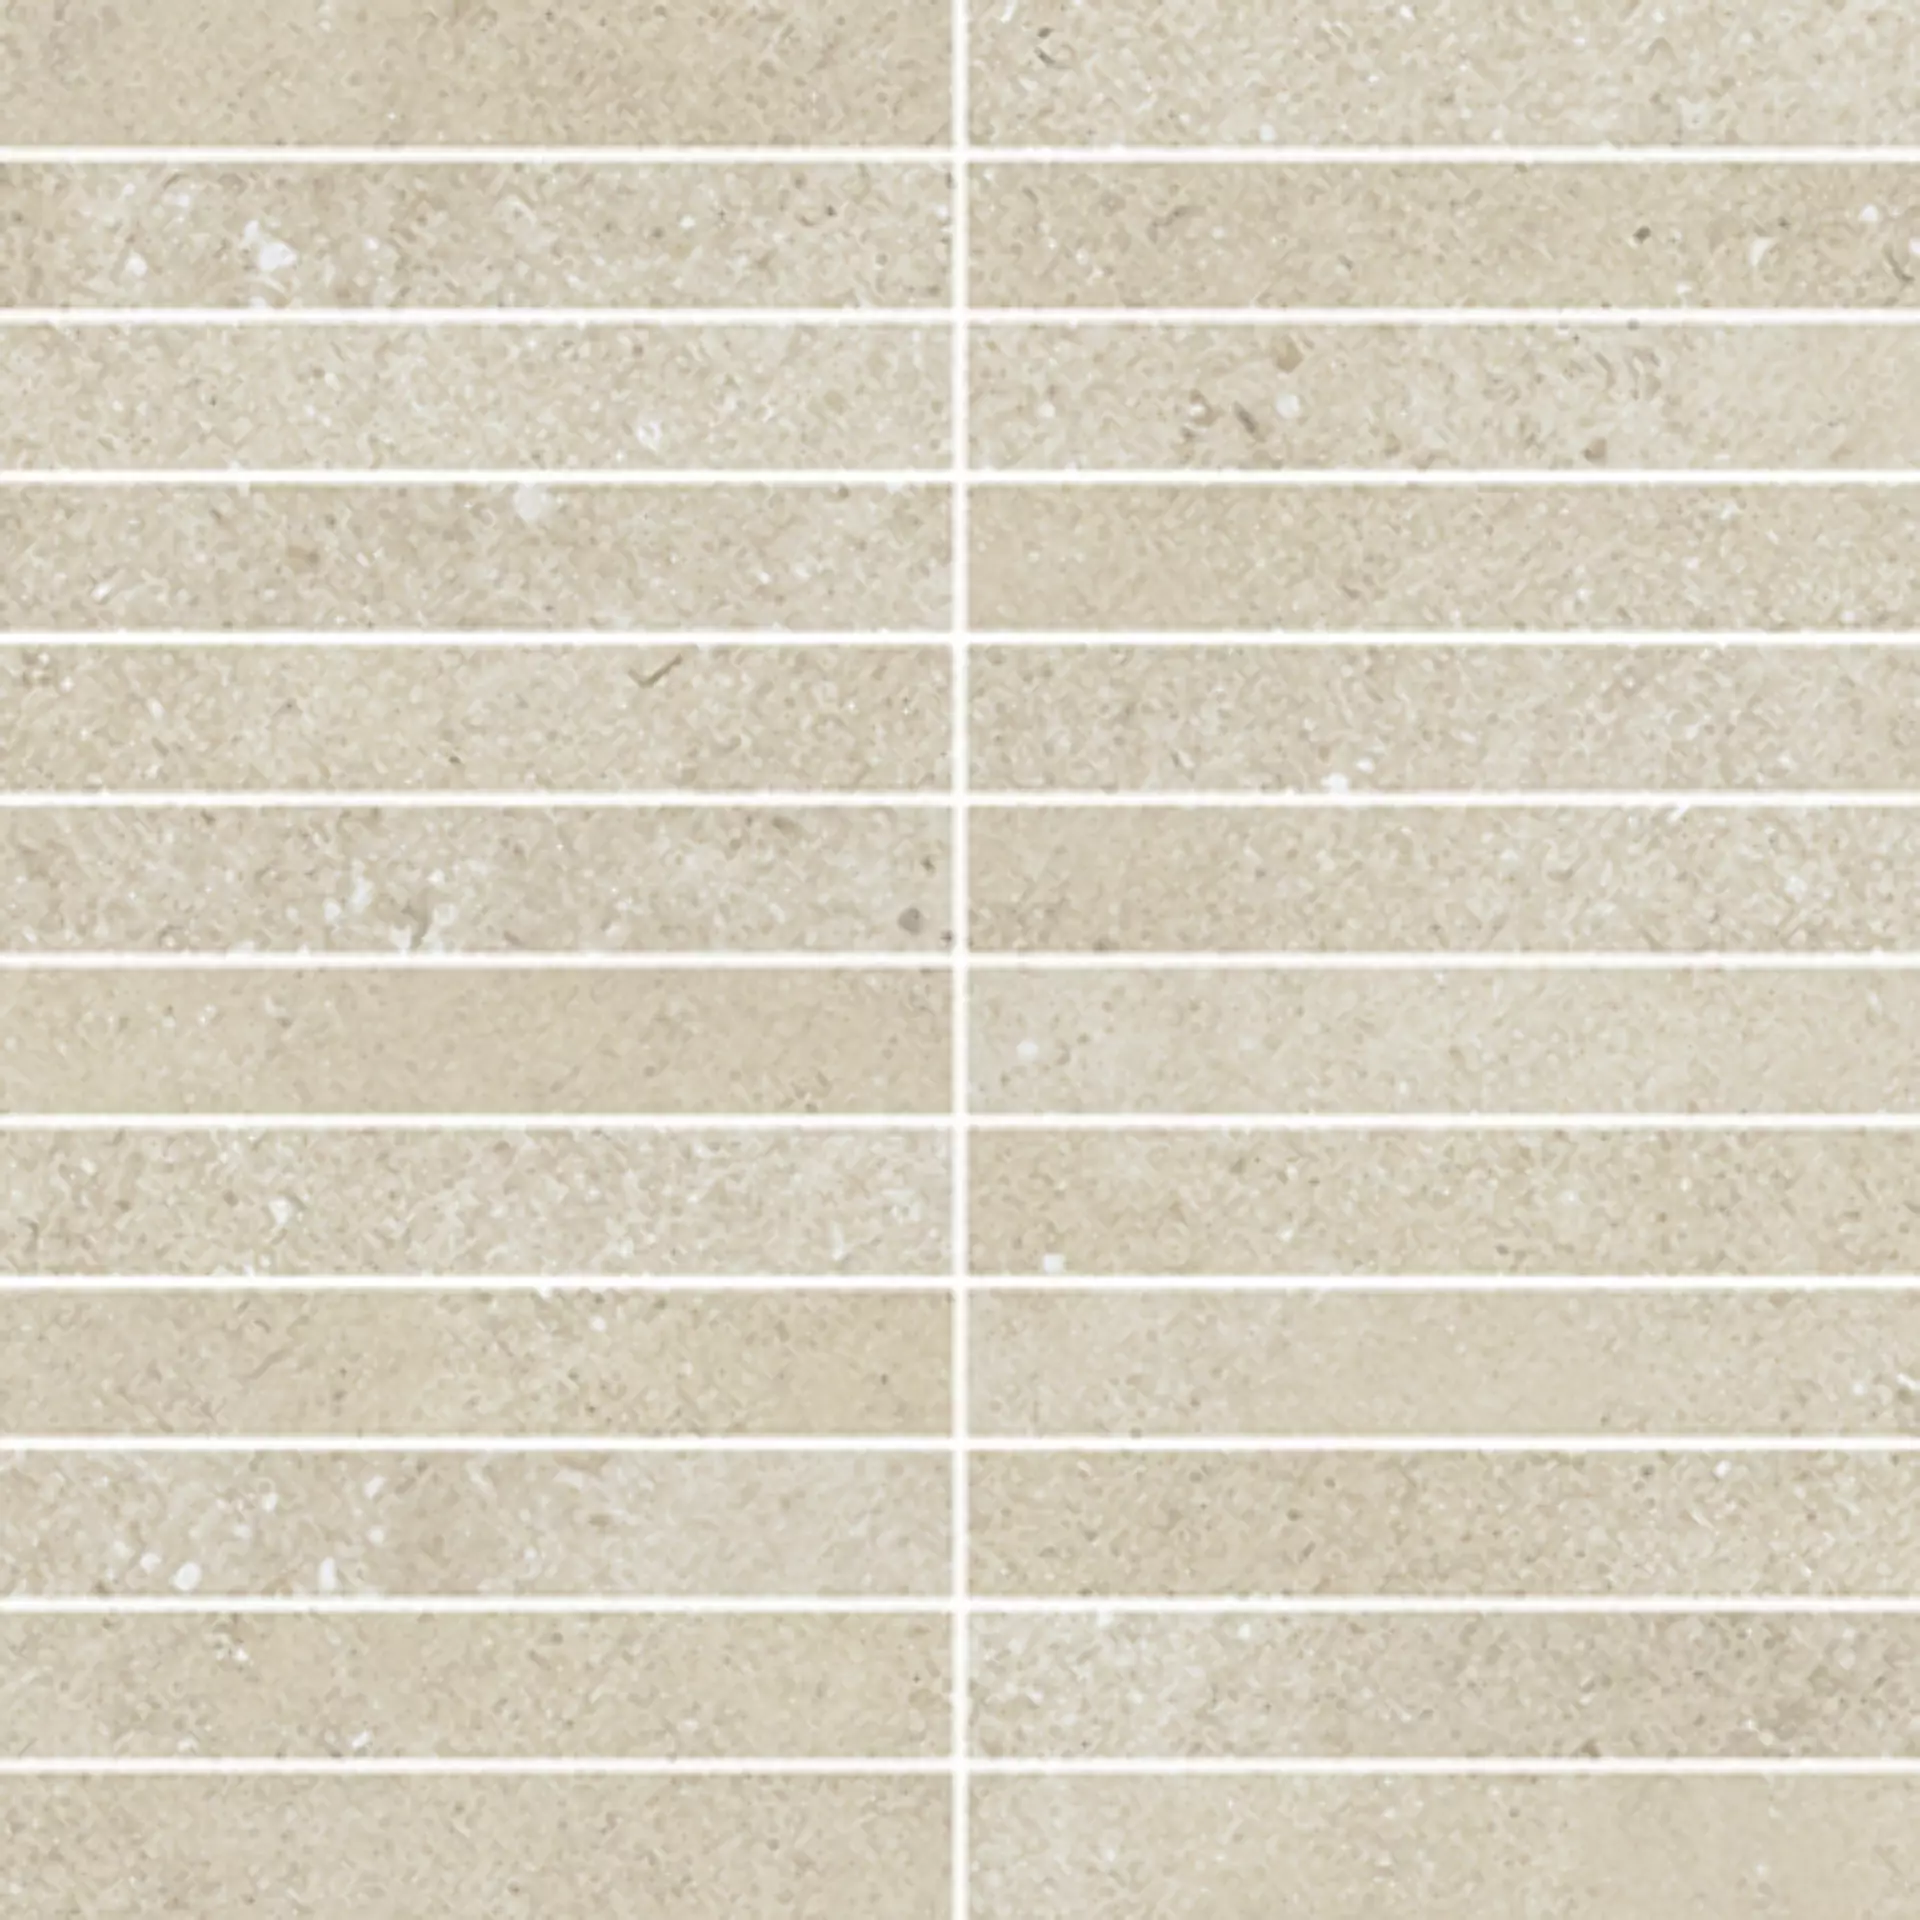 Wandfliese,Bodenfliese Villeroy & Boch Hudson Sand Brushed Sand 2135-SD2B gebuerstet 2,5x15cm Mosaik (2,5x15) rektifiziert 10mm